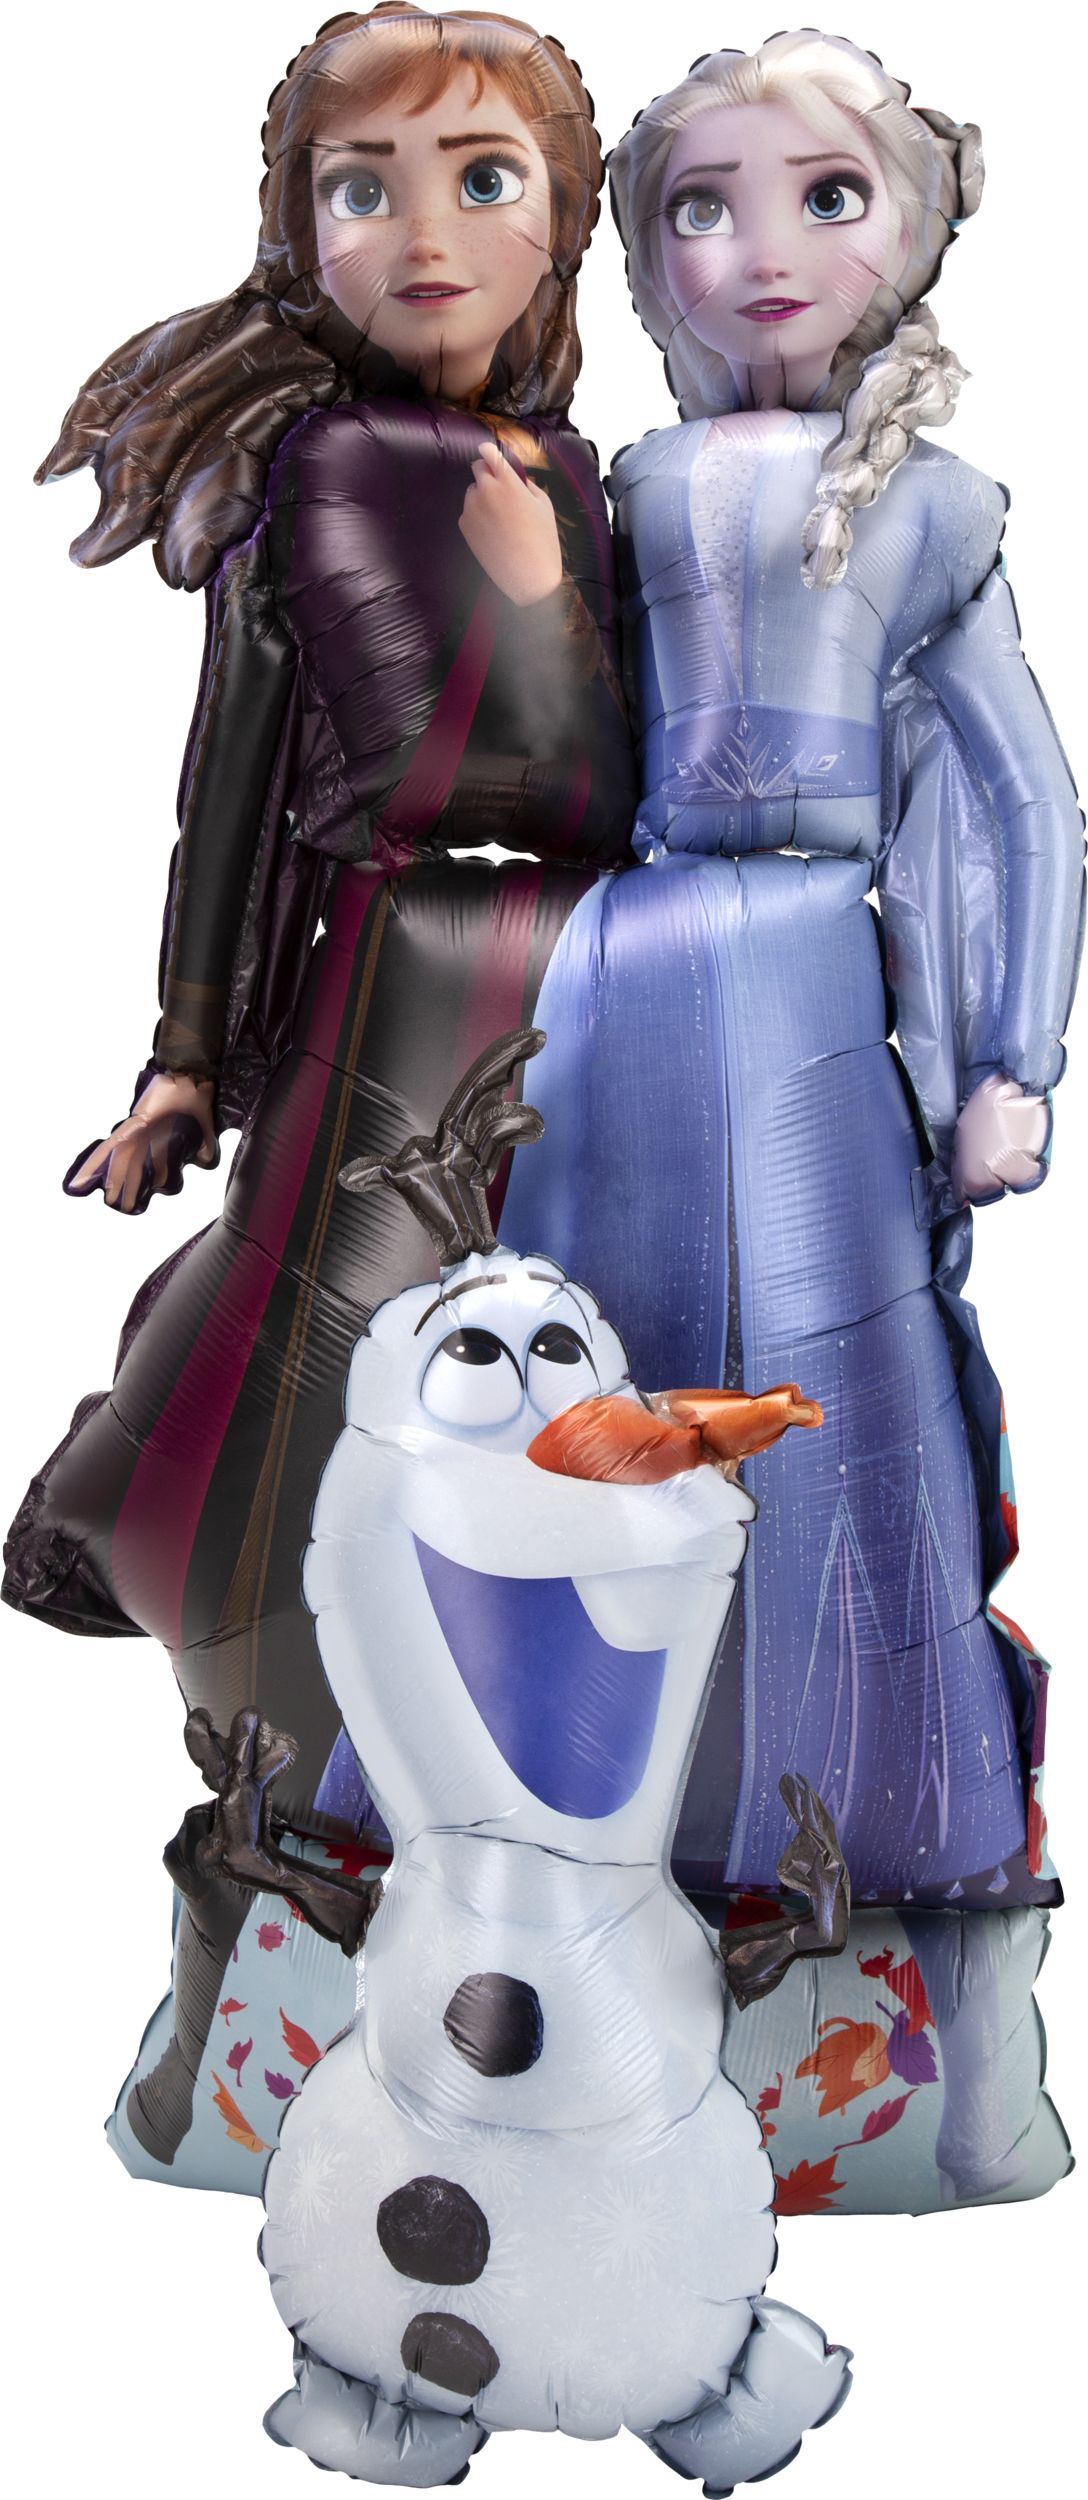 Ensemble 2 poupées Frozen Anna et Elsa : 58cm de hauteur